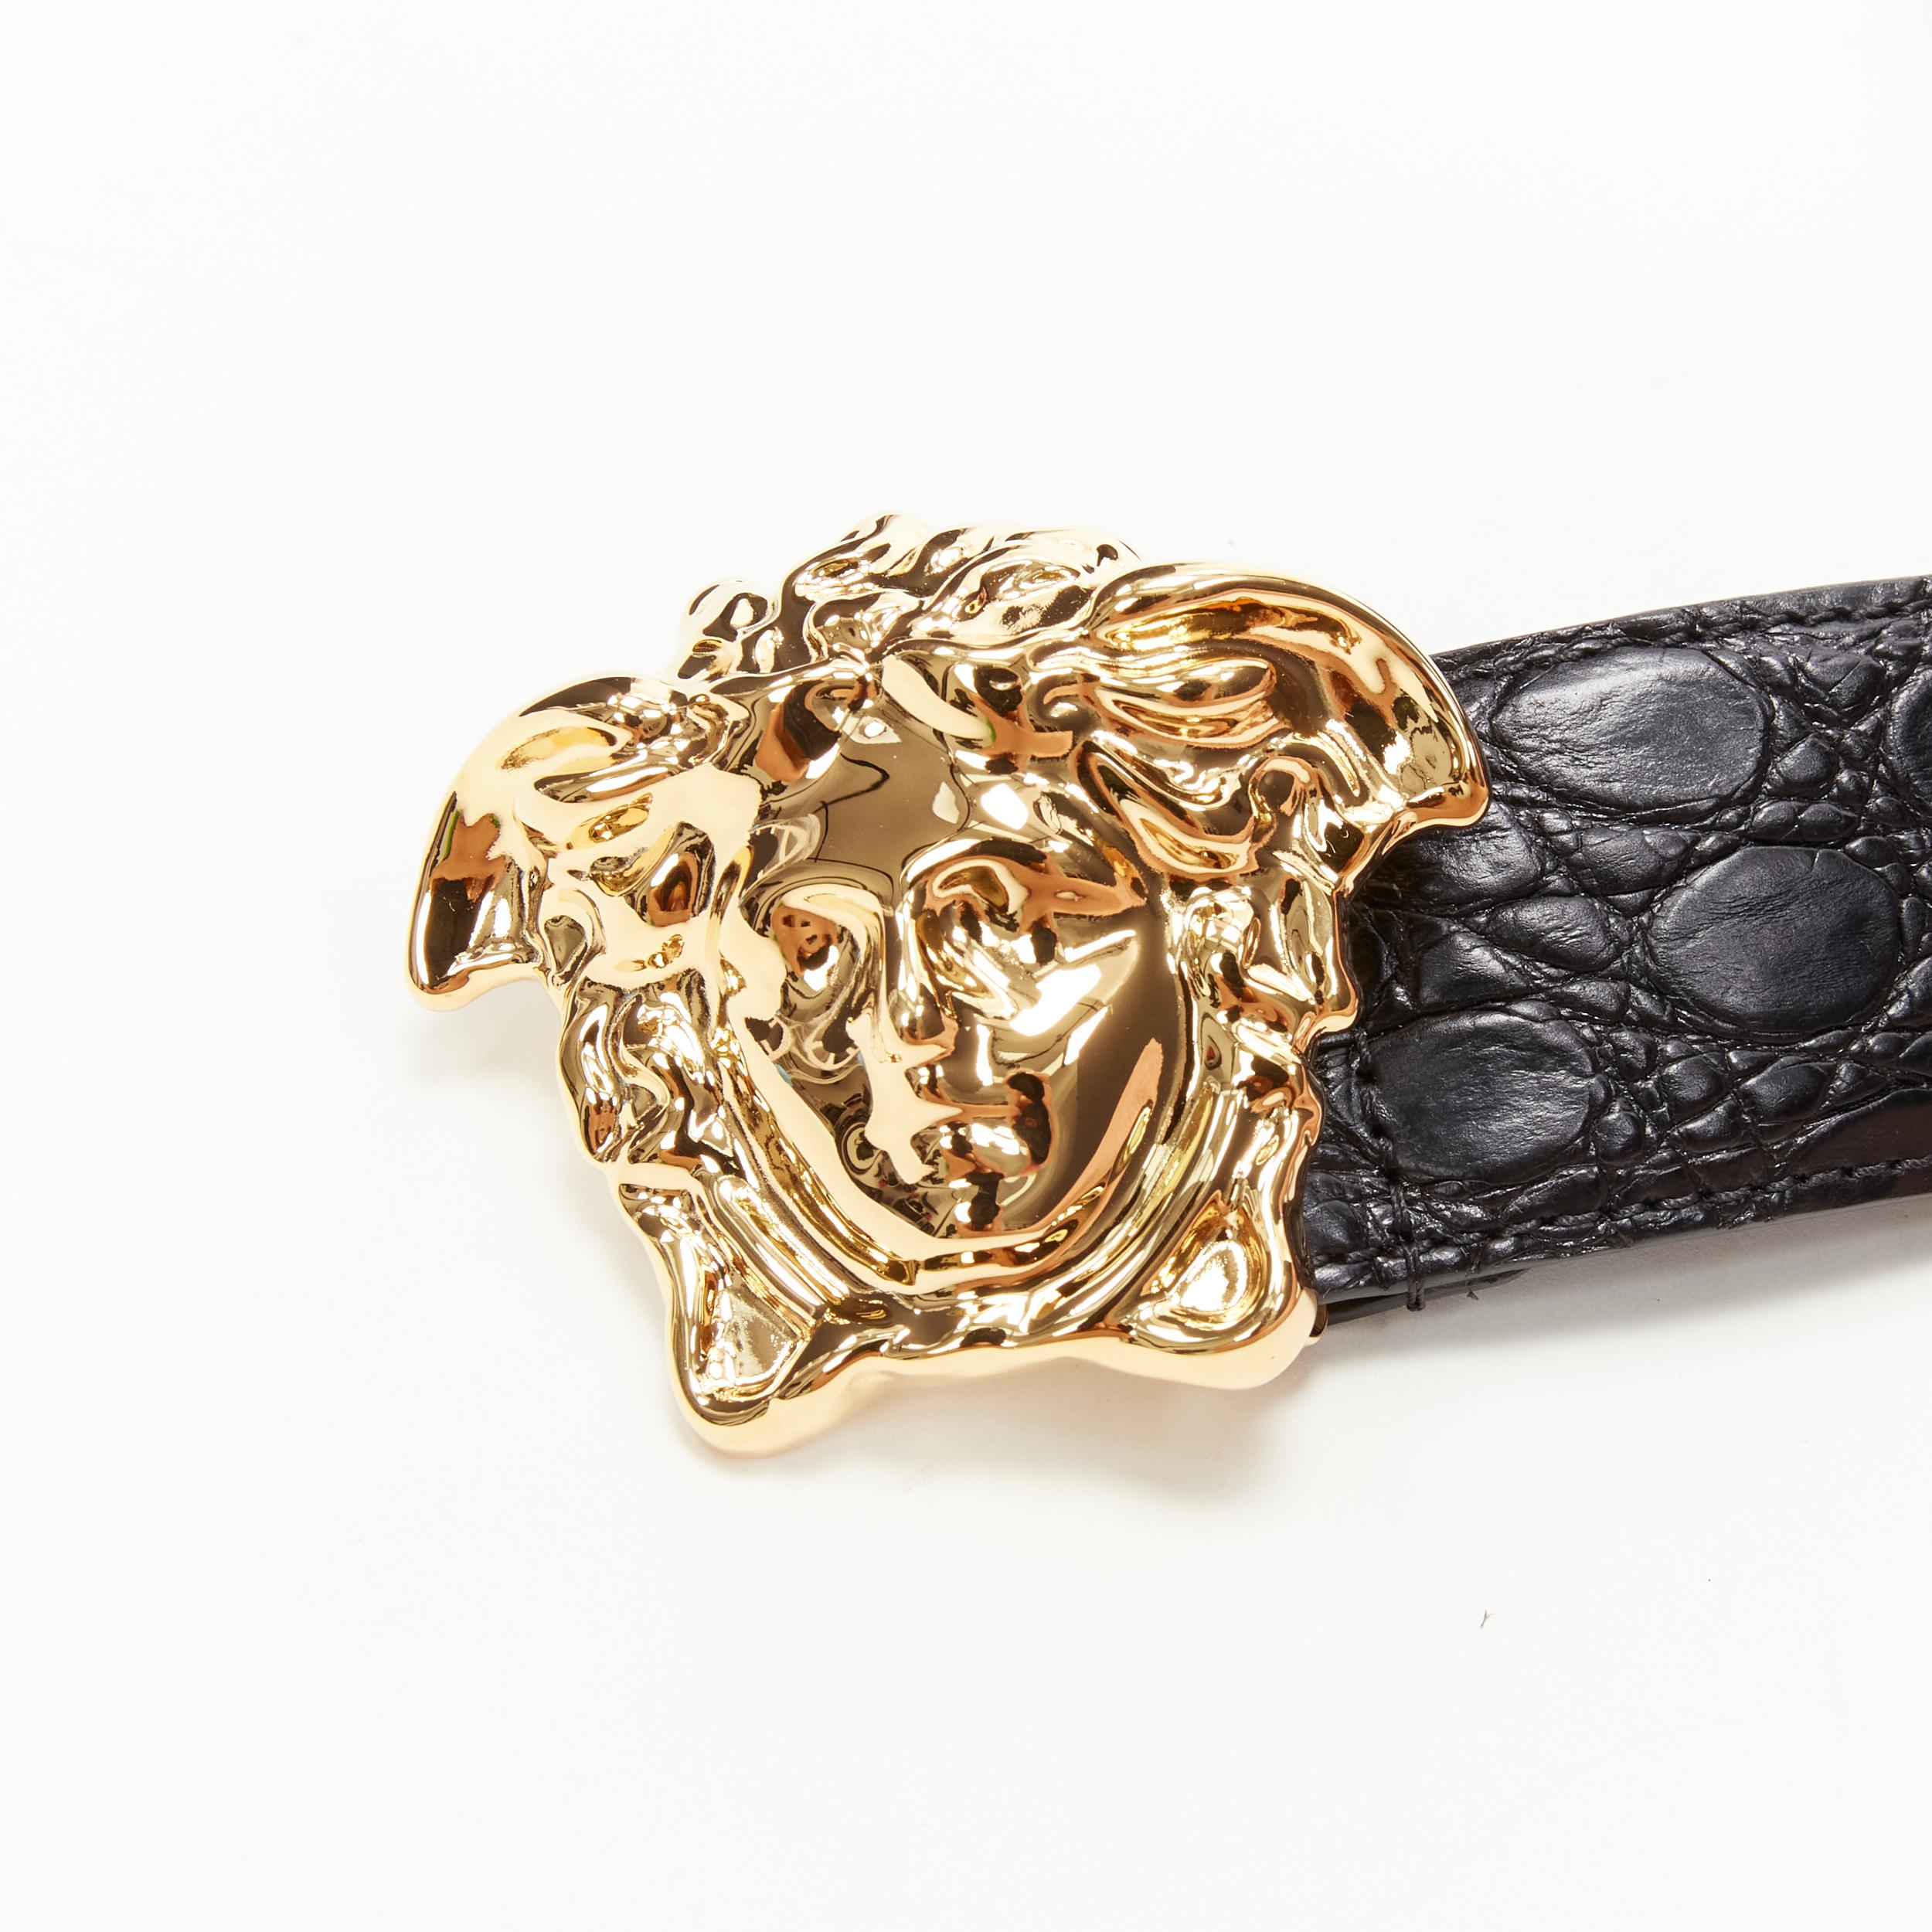 new VERSACE $1200 La Medusa gold buckle black croc leather belt 95cm 36-40